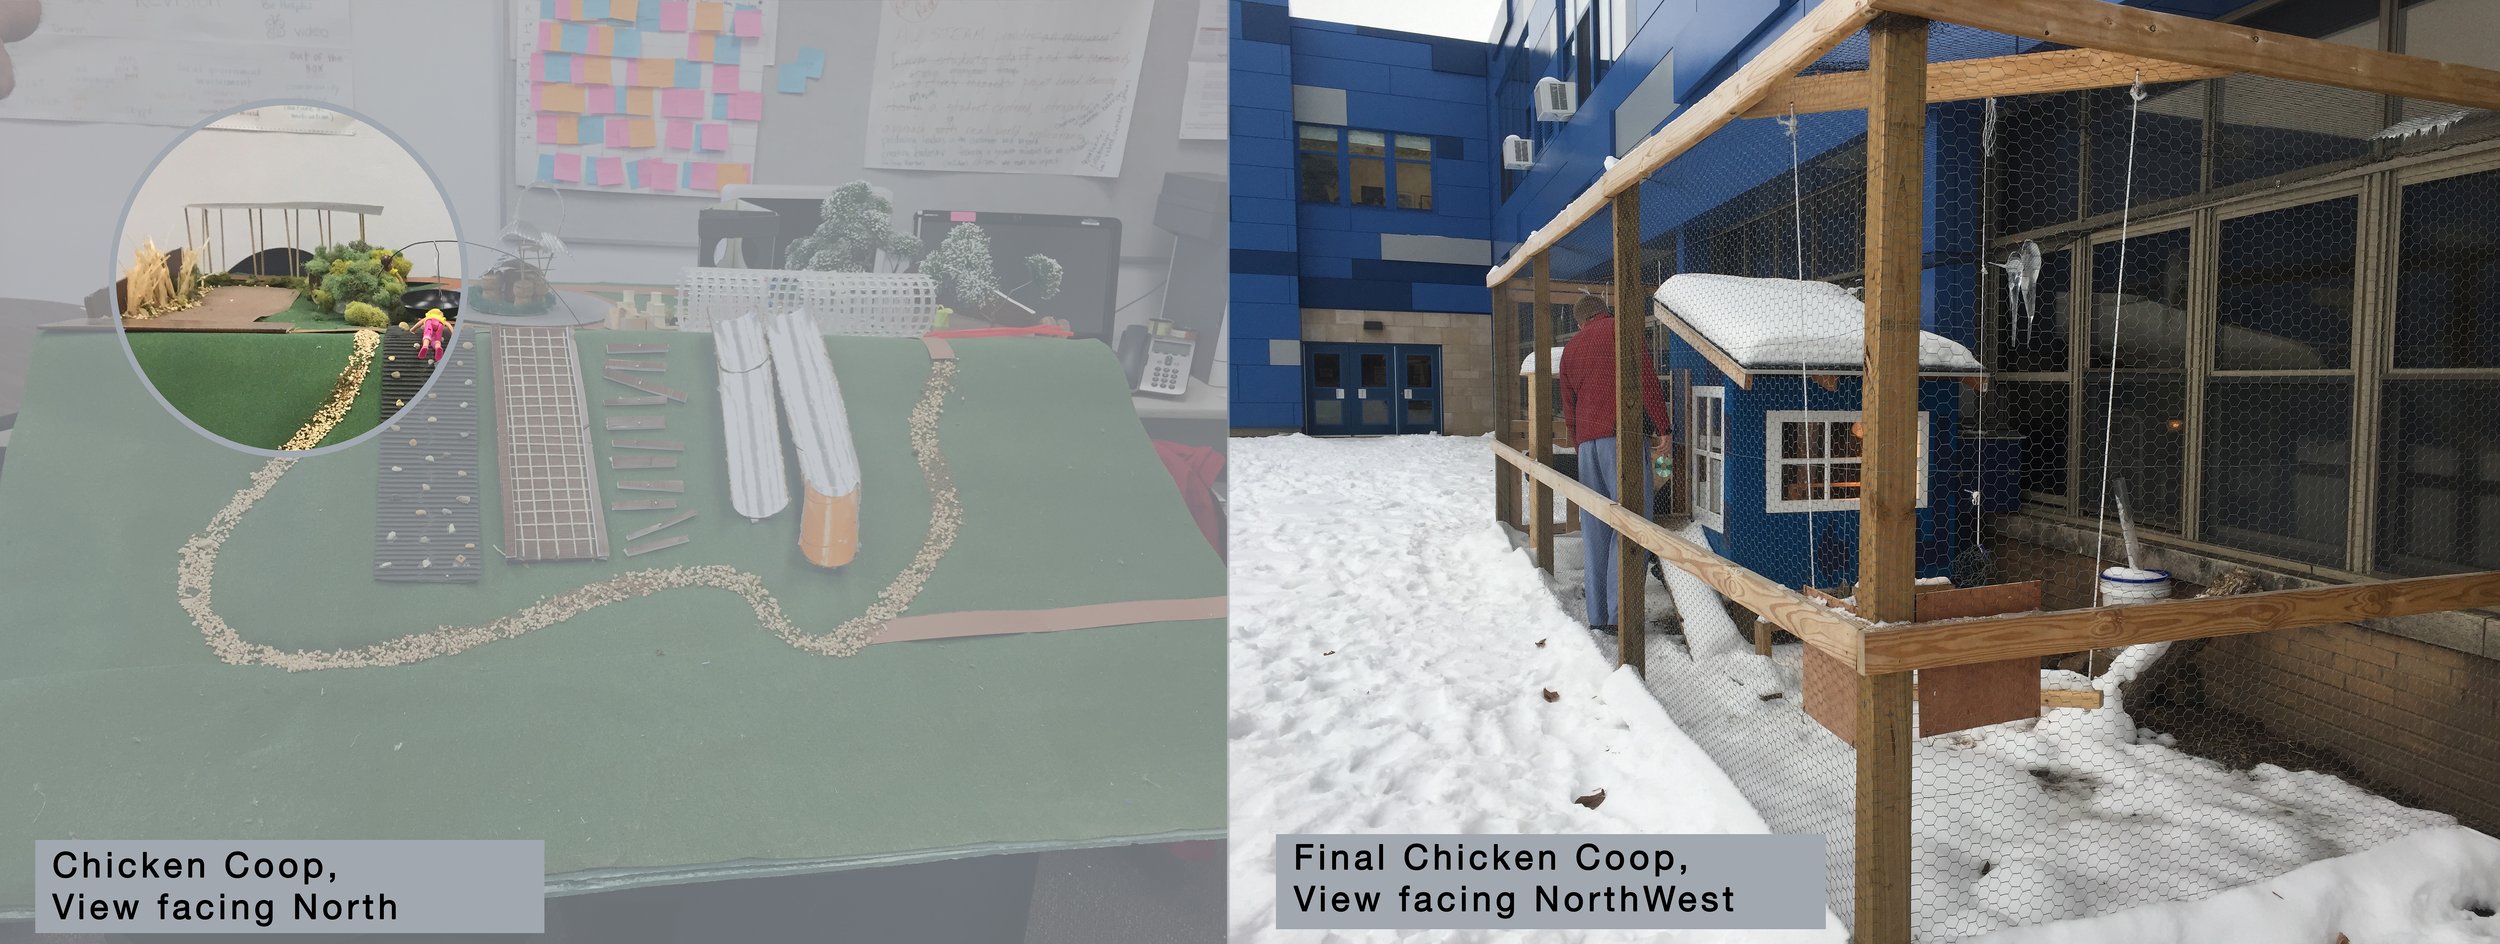 Chicken Coop__Comparison.jpg